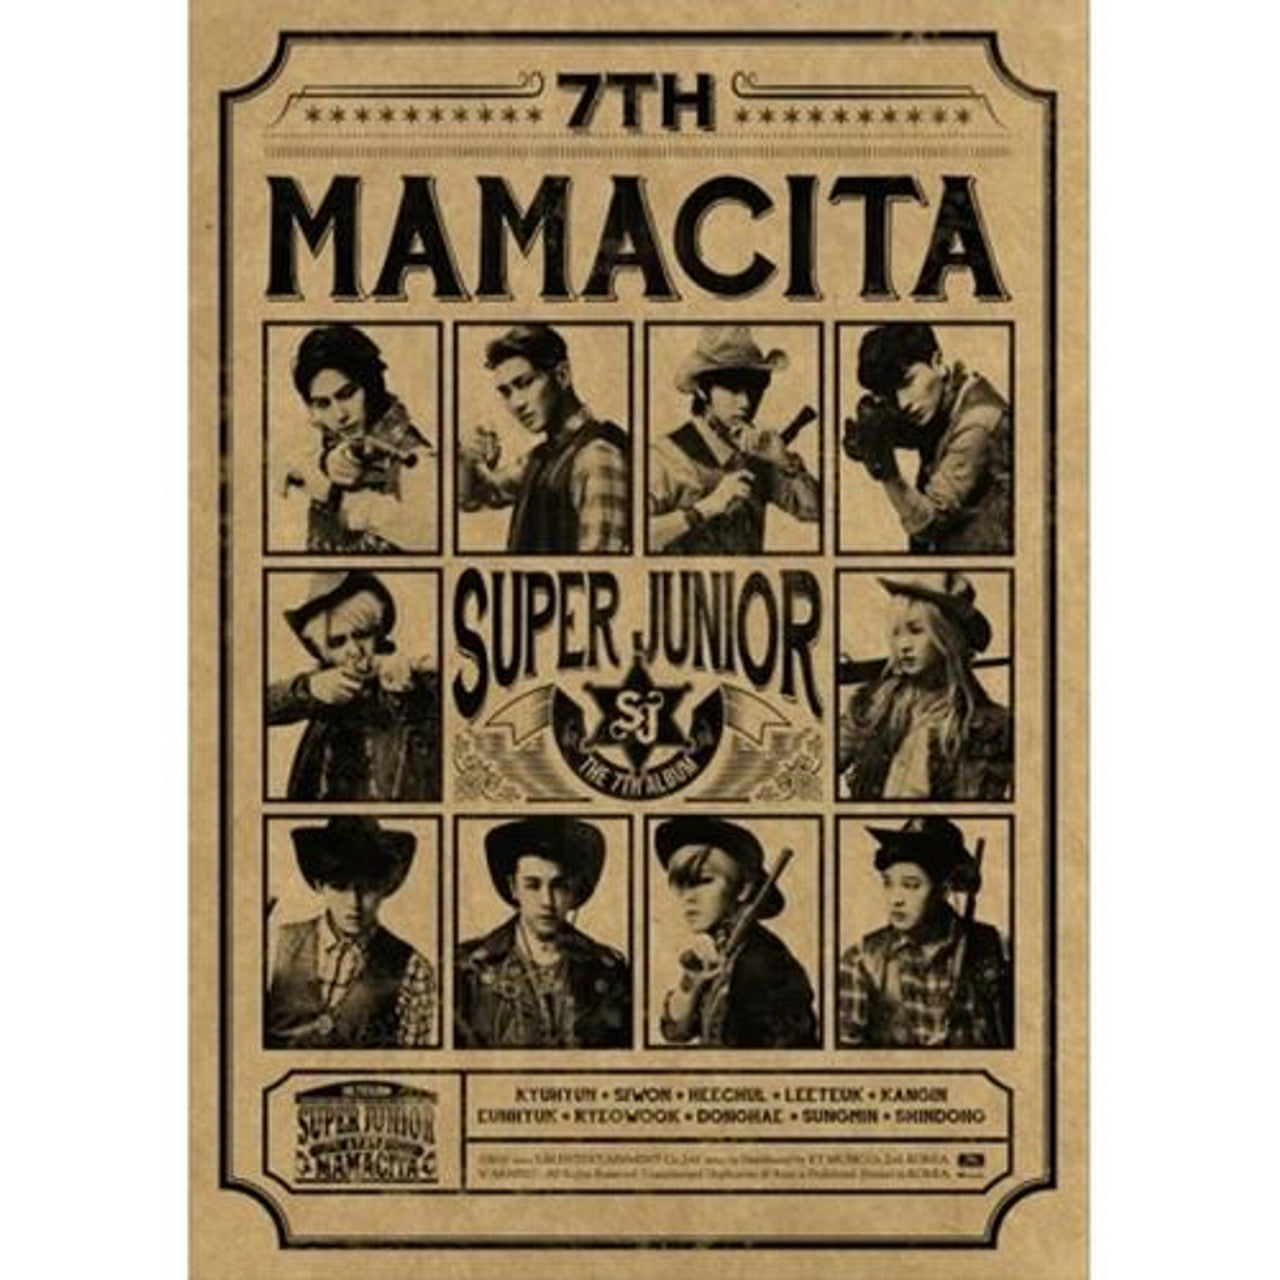 Super Junior - Mamacita (B Ver.)